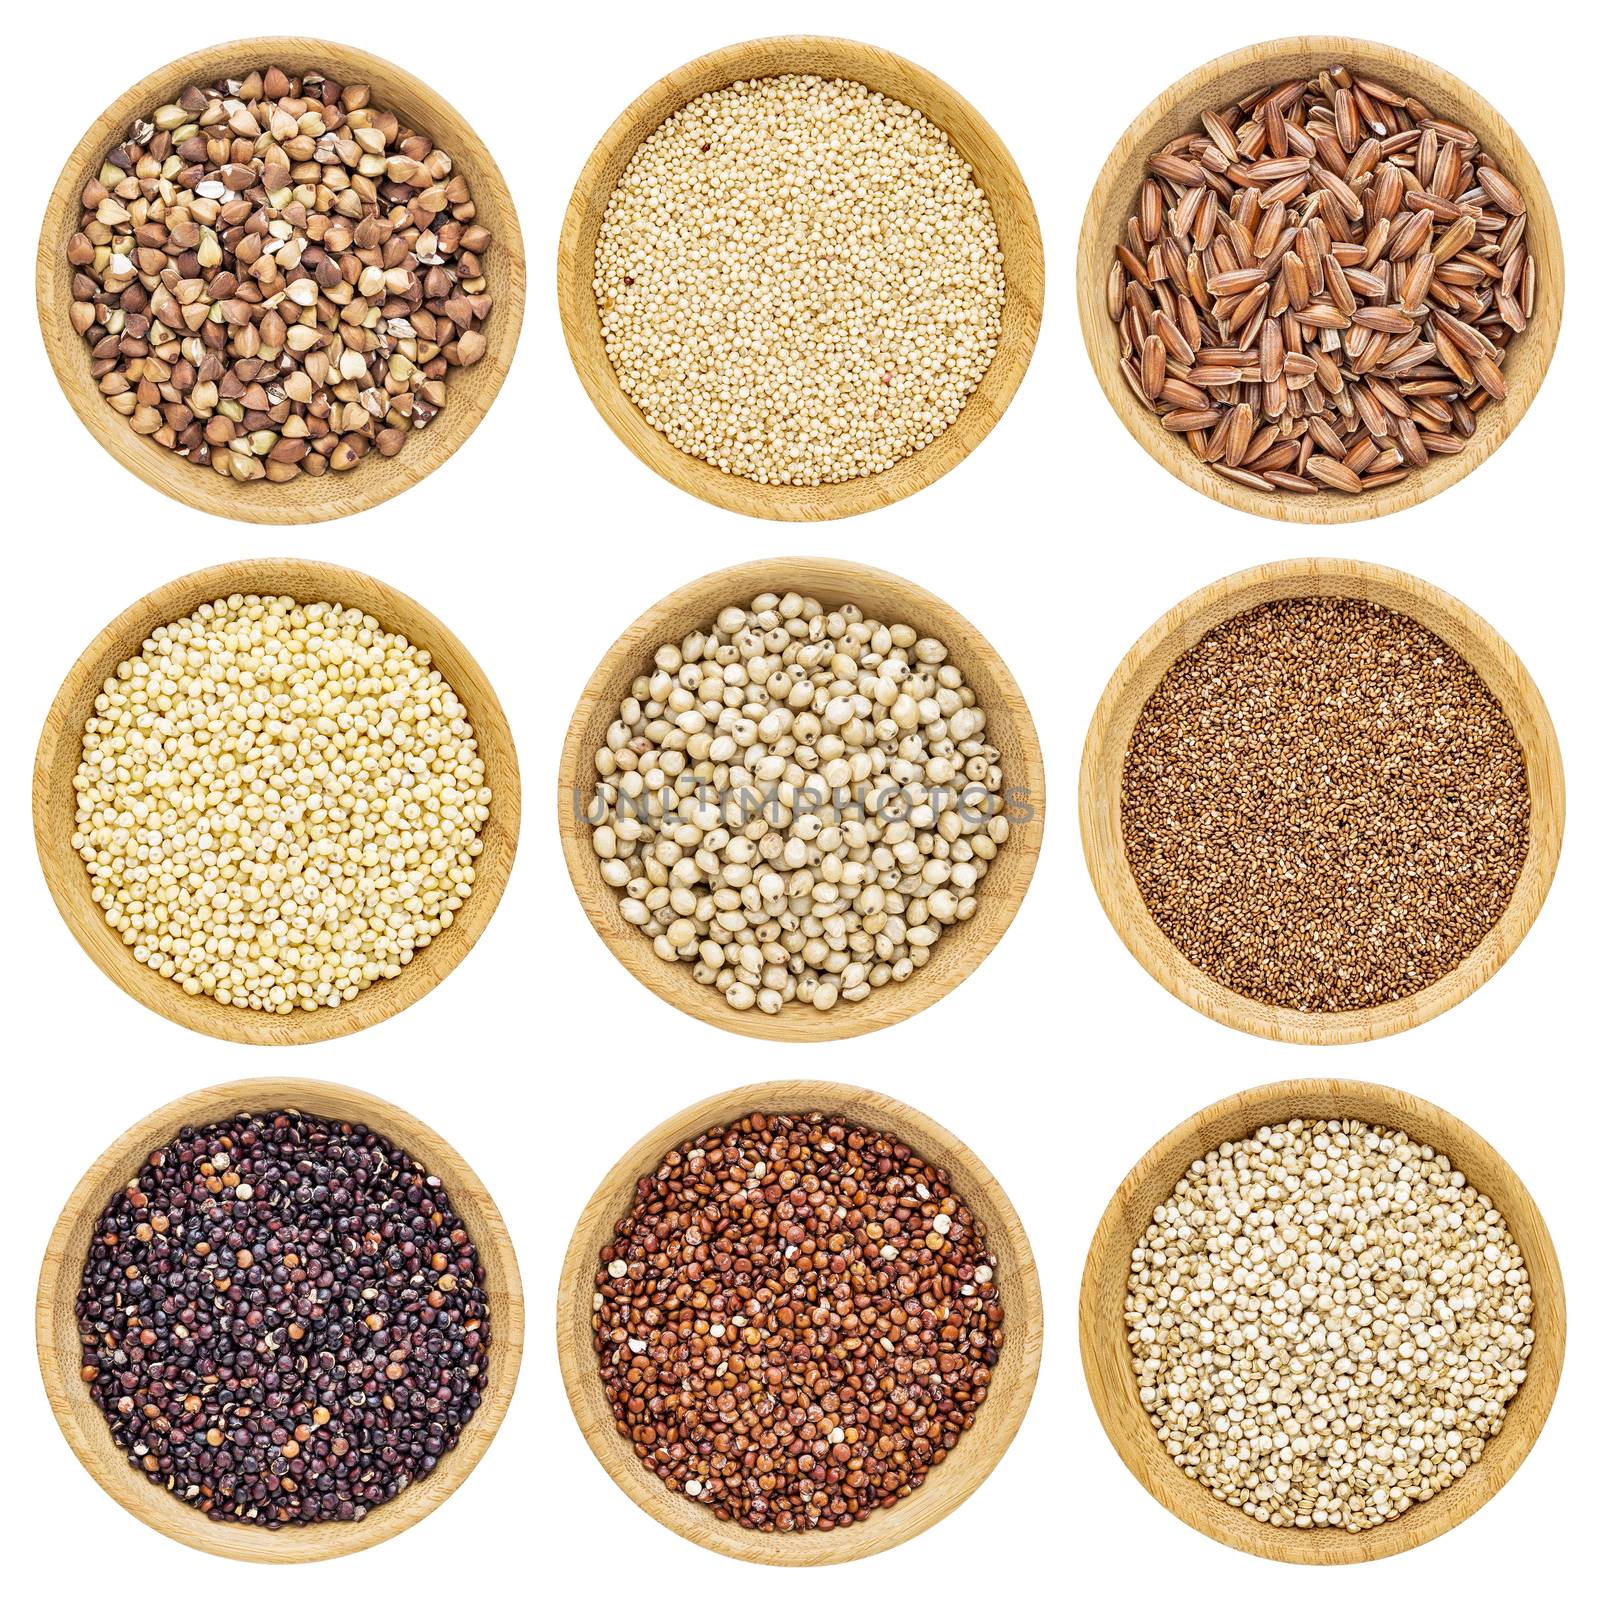 gluten free grains by PixelsAway